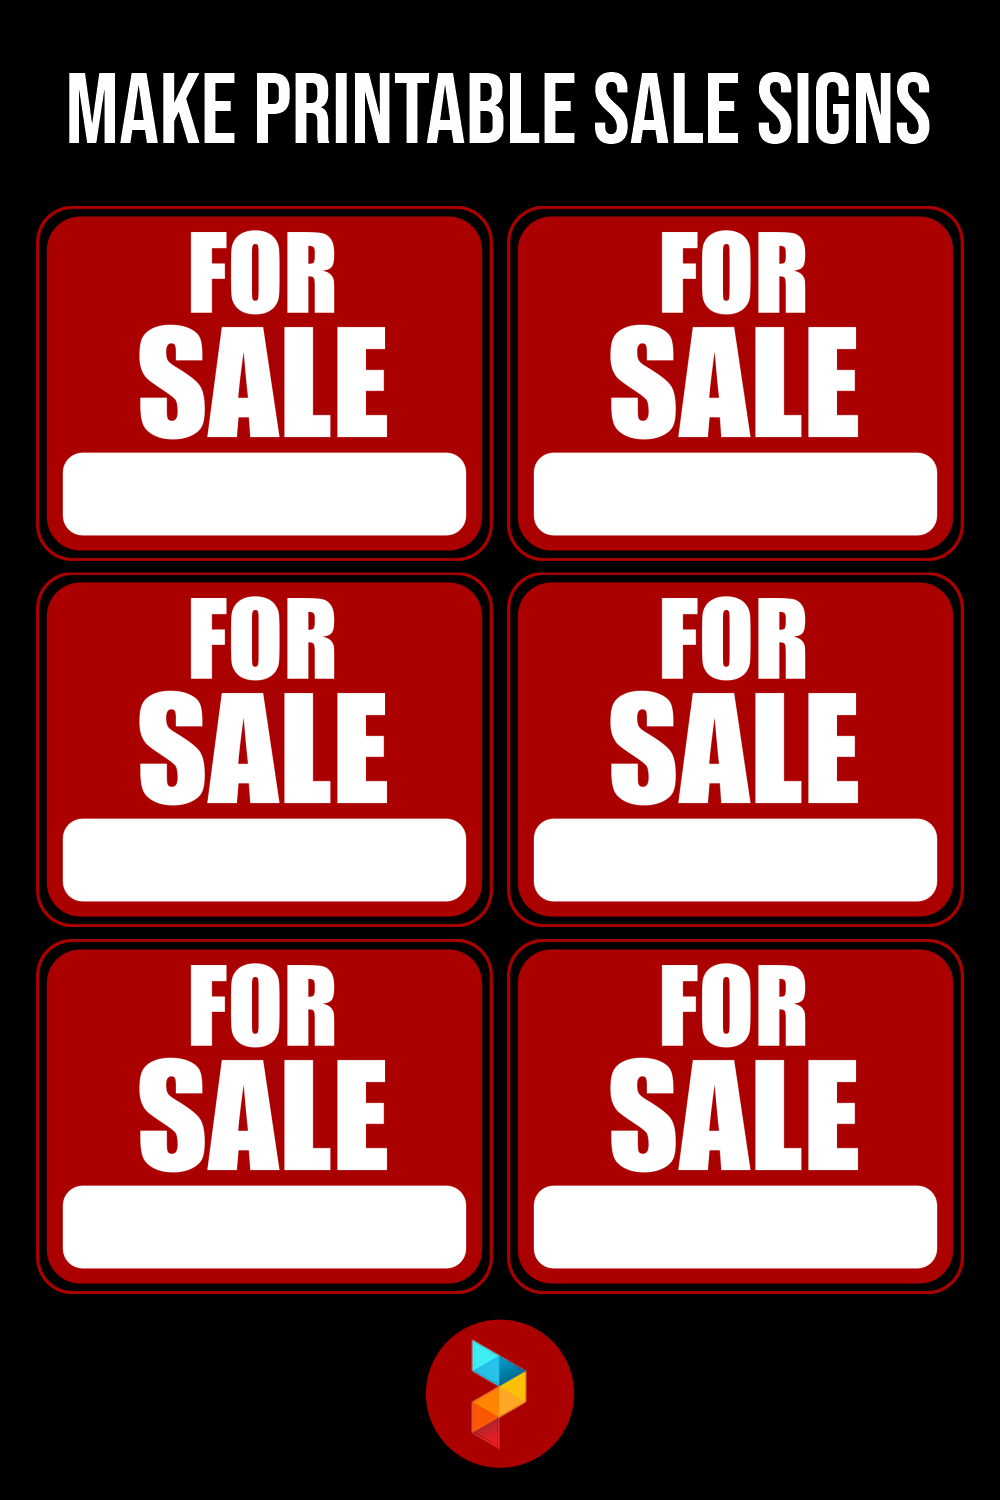 Make Printable Sale Signs